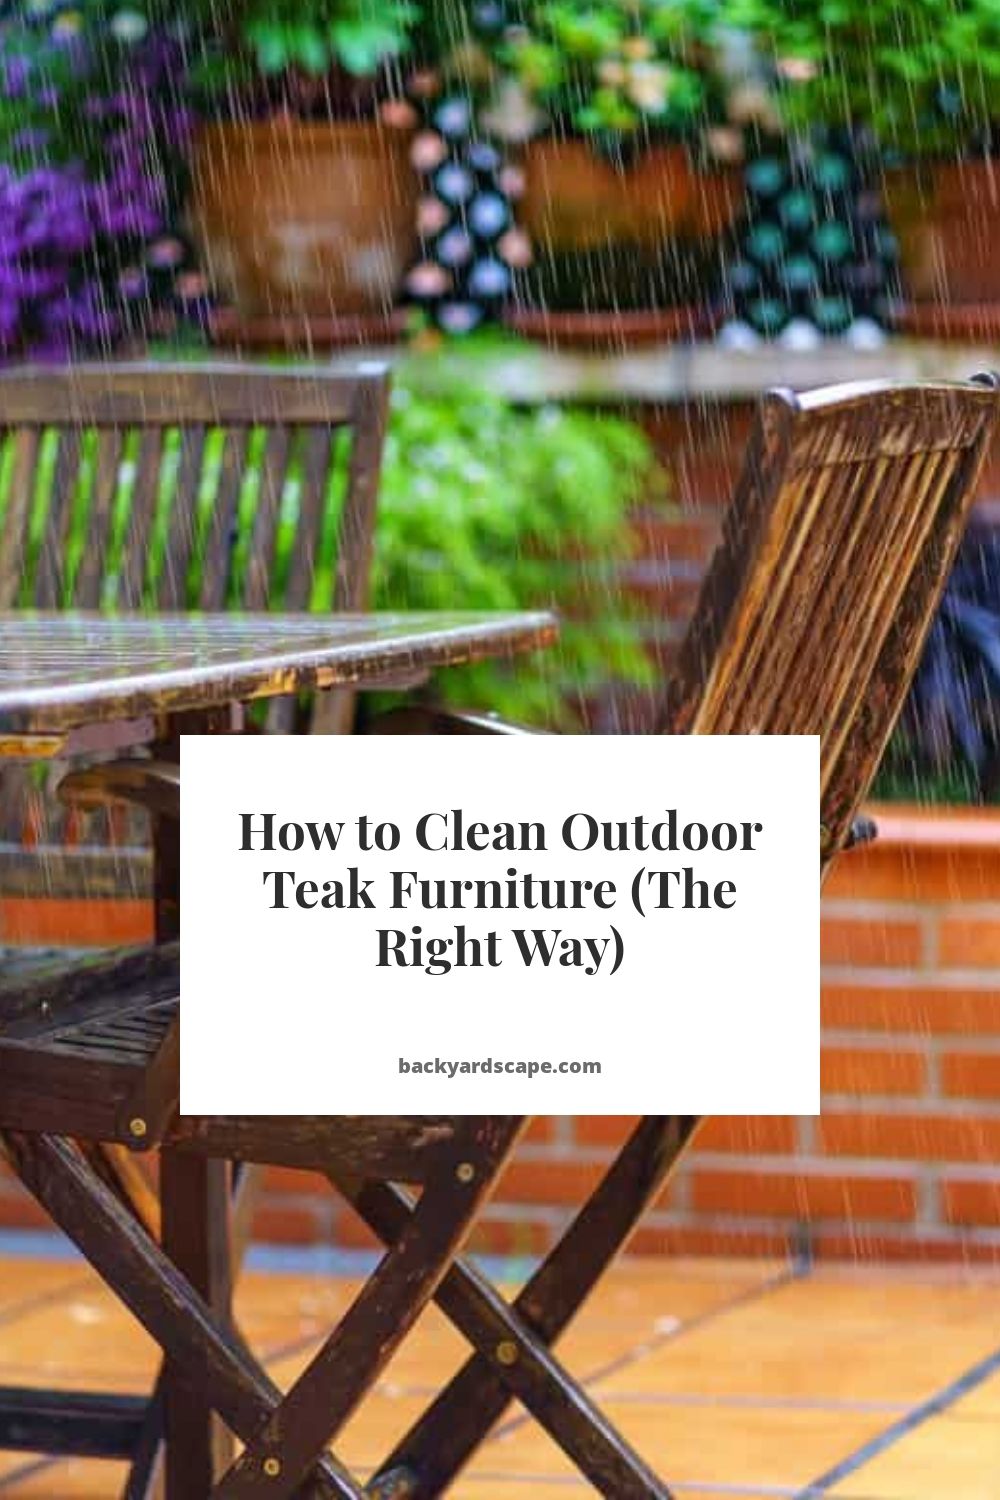 Teak garden furniture